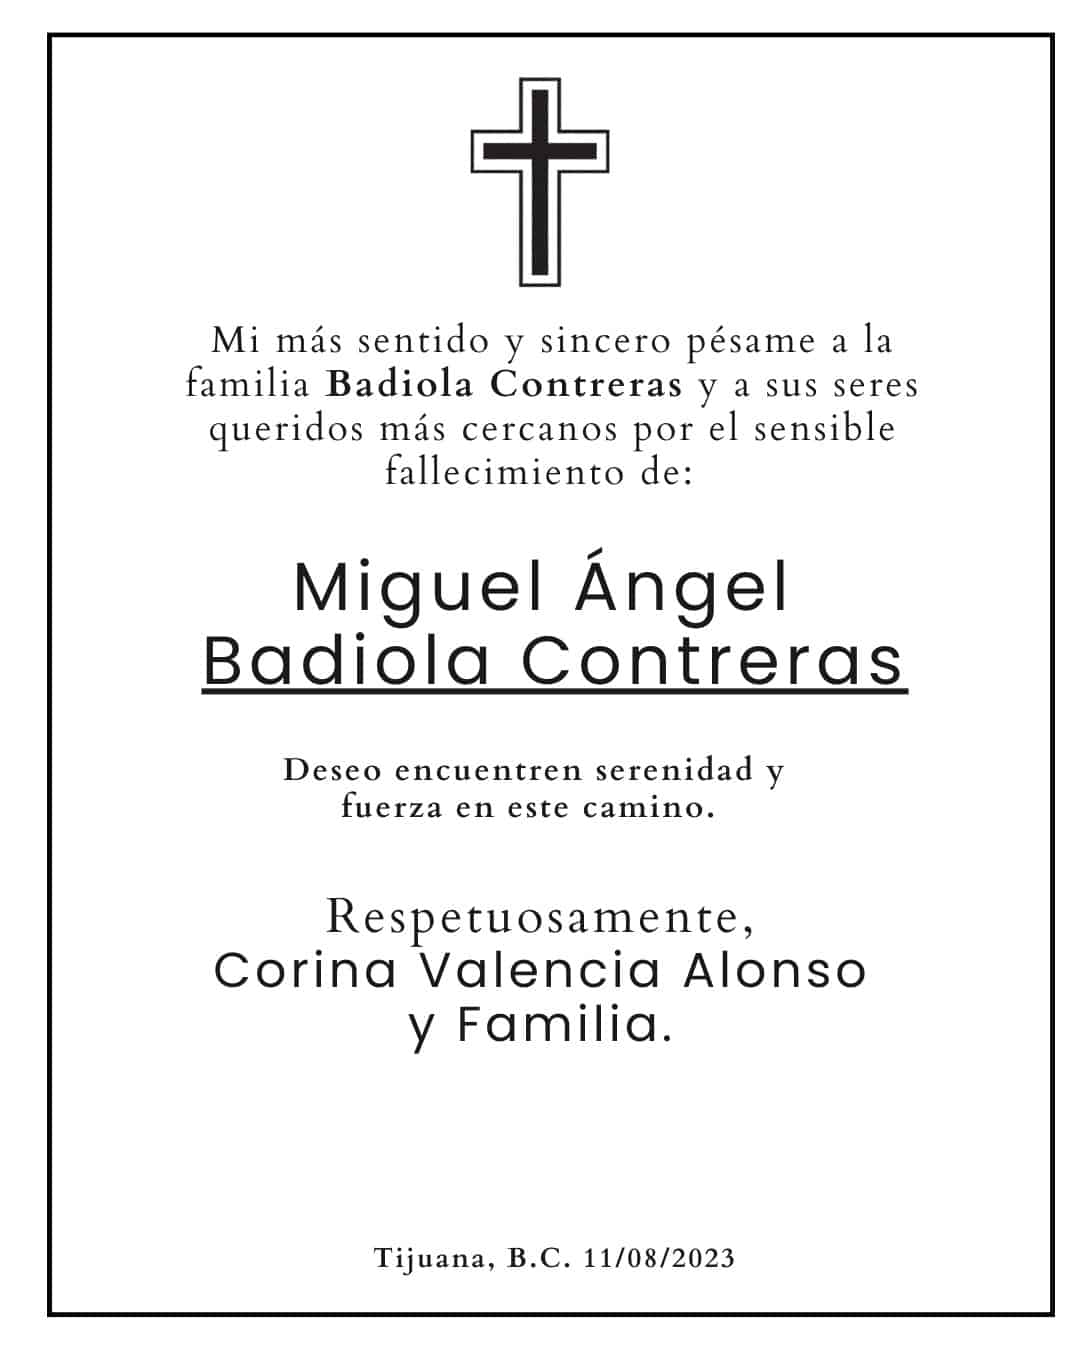 Miguel Ángel Badiola Contreras